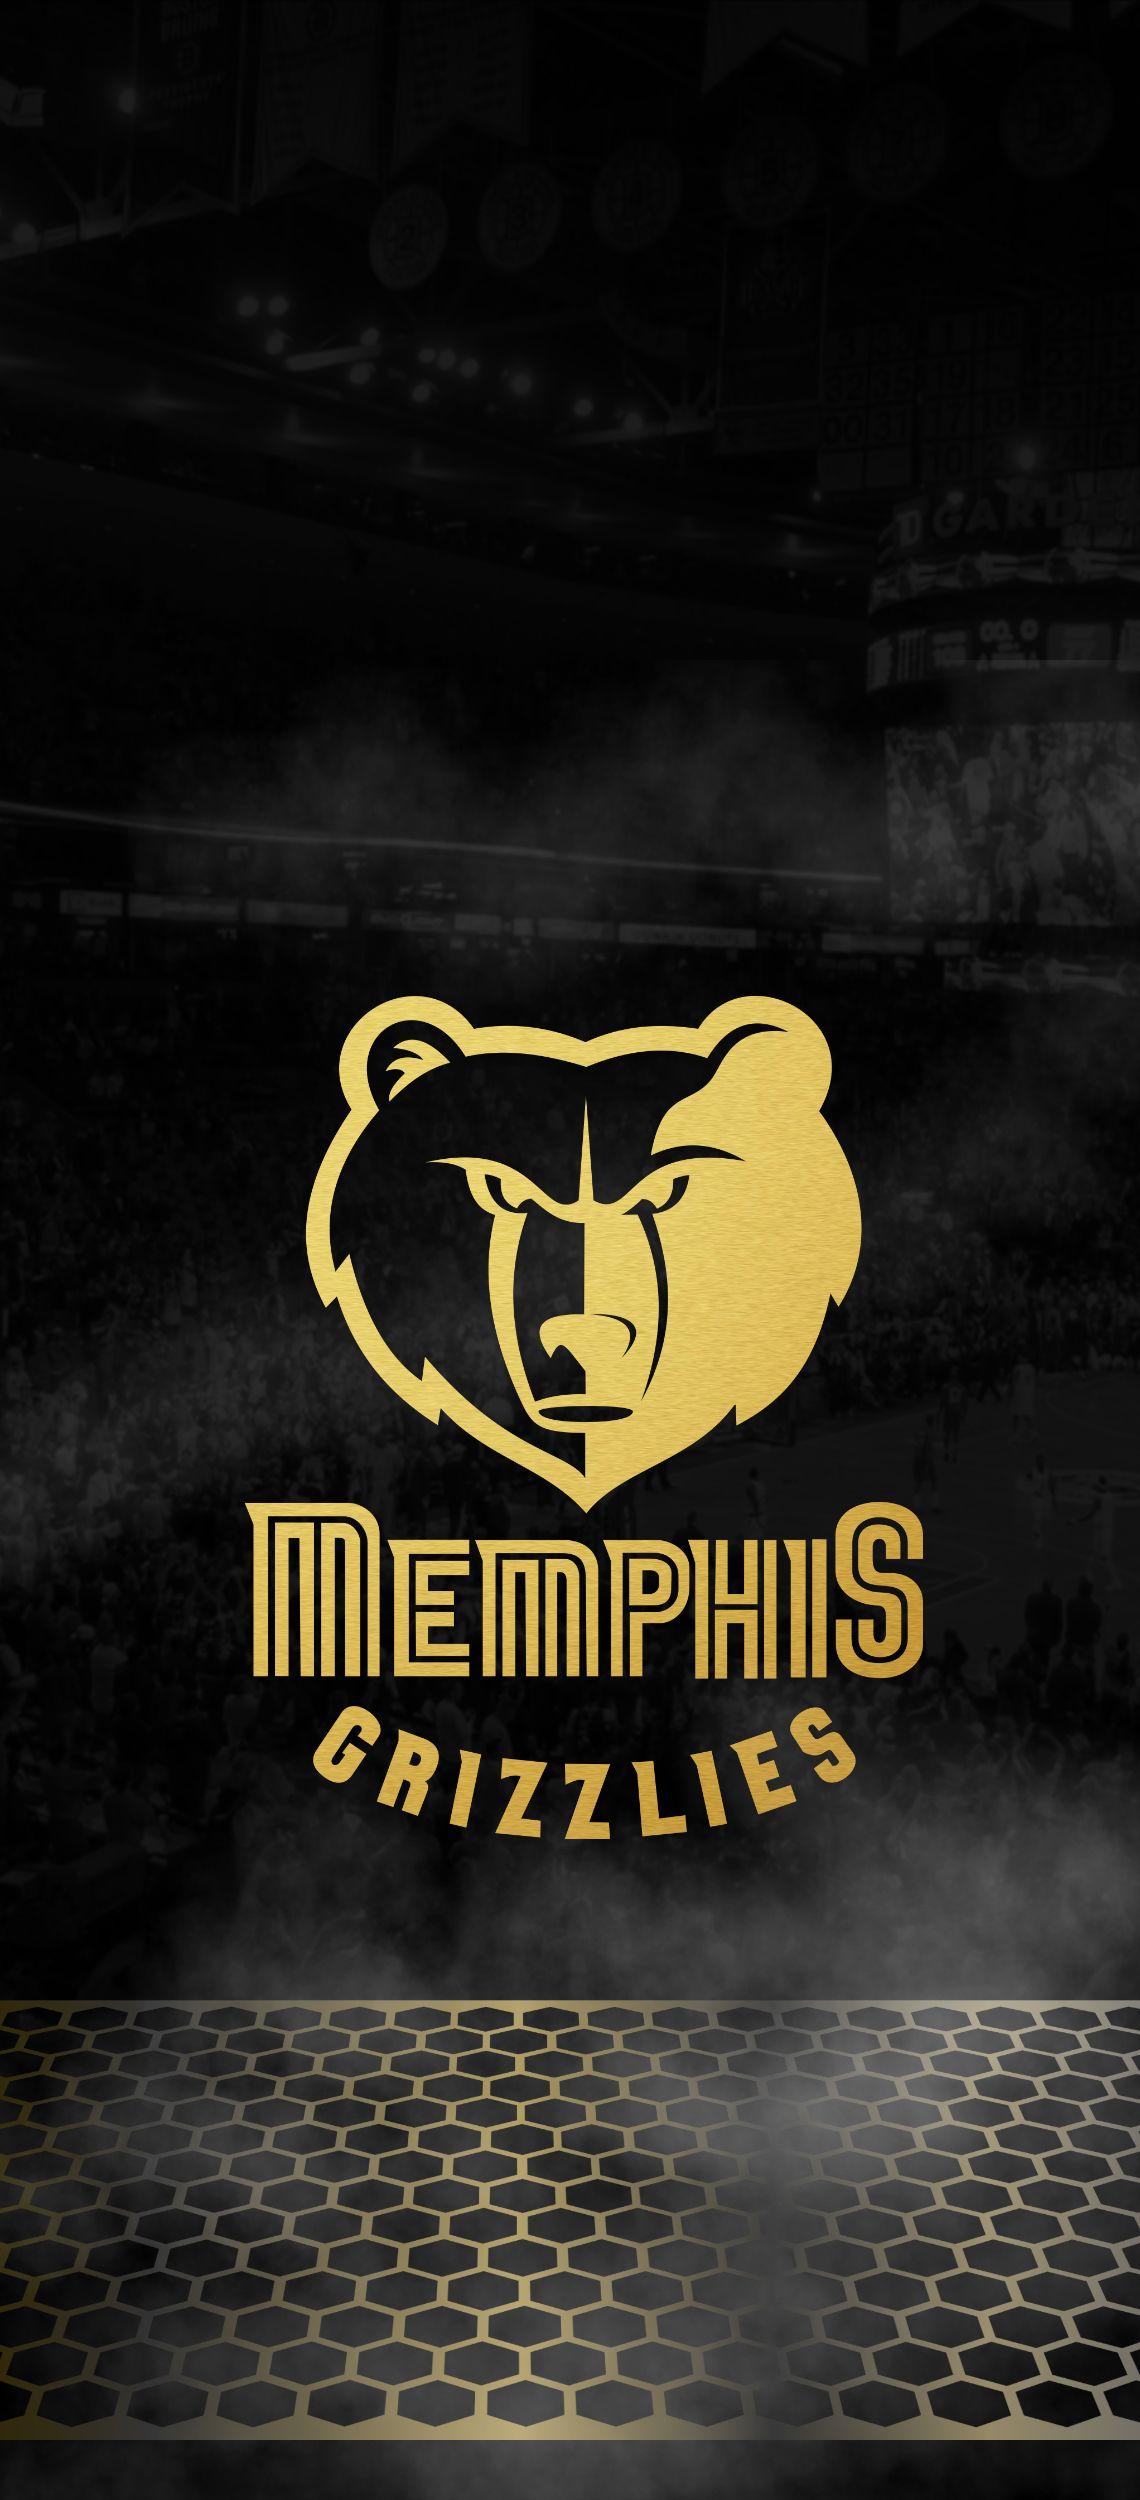 wallpaper memphis grizzlies team